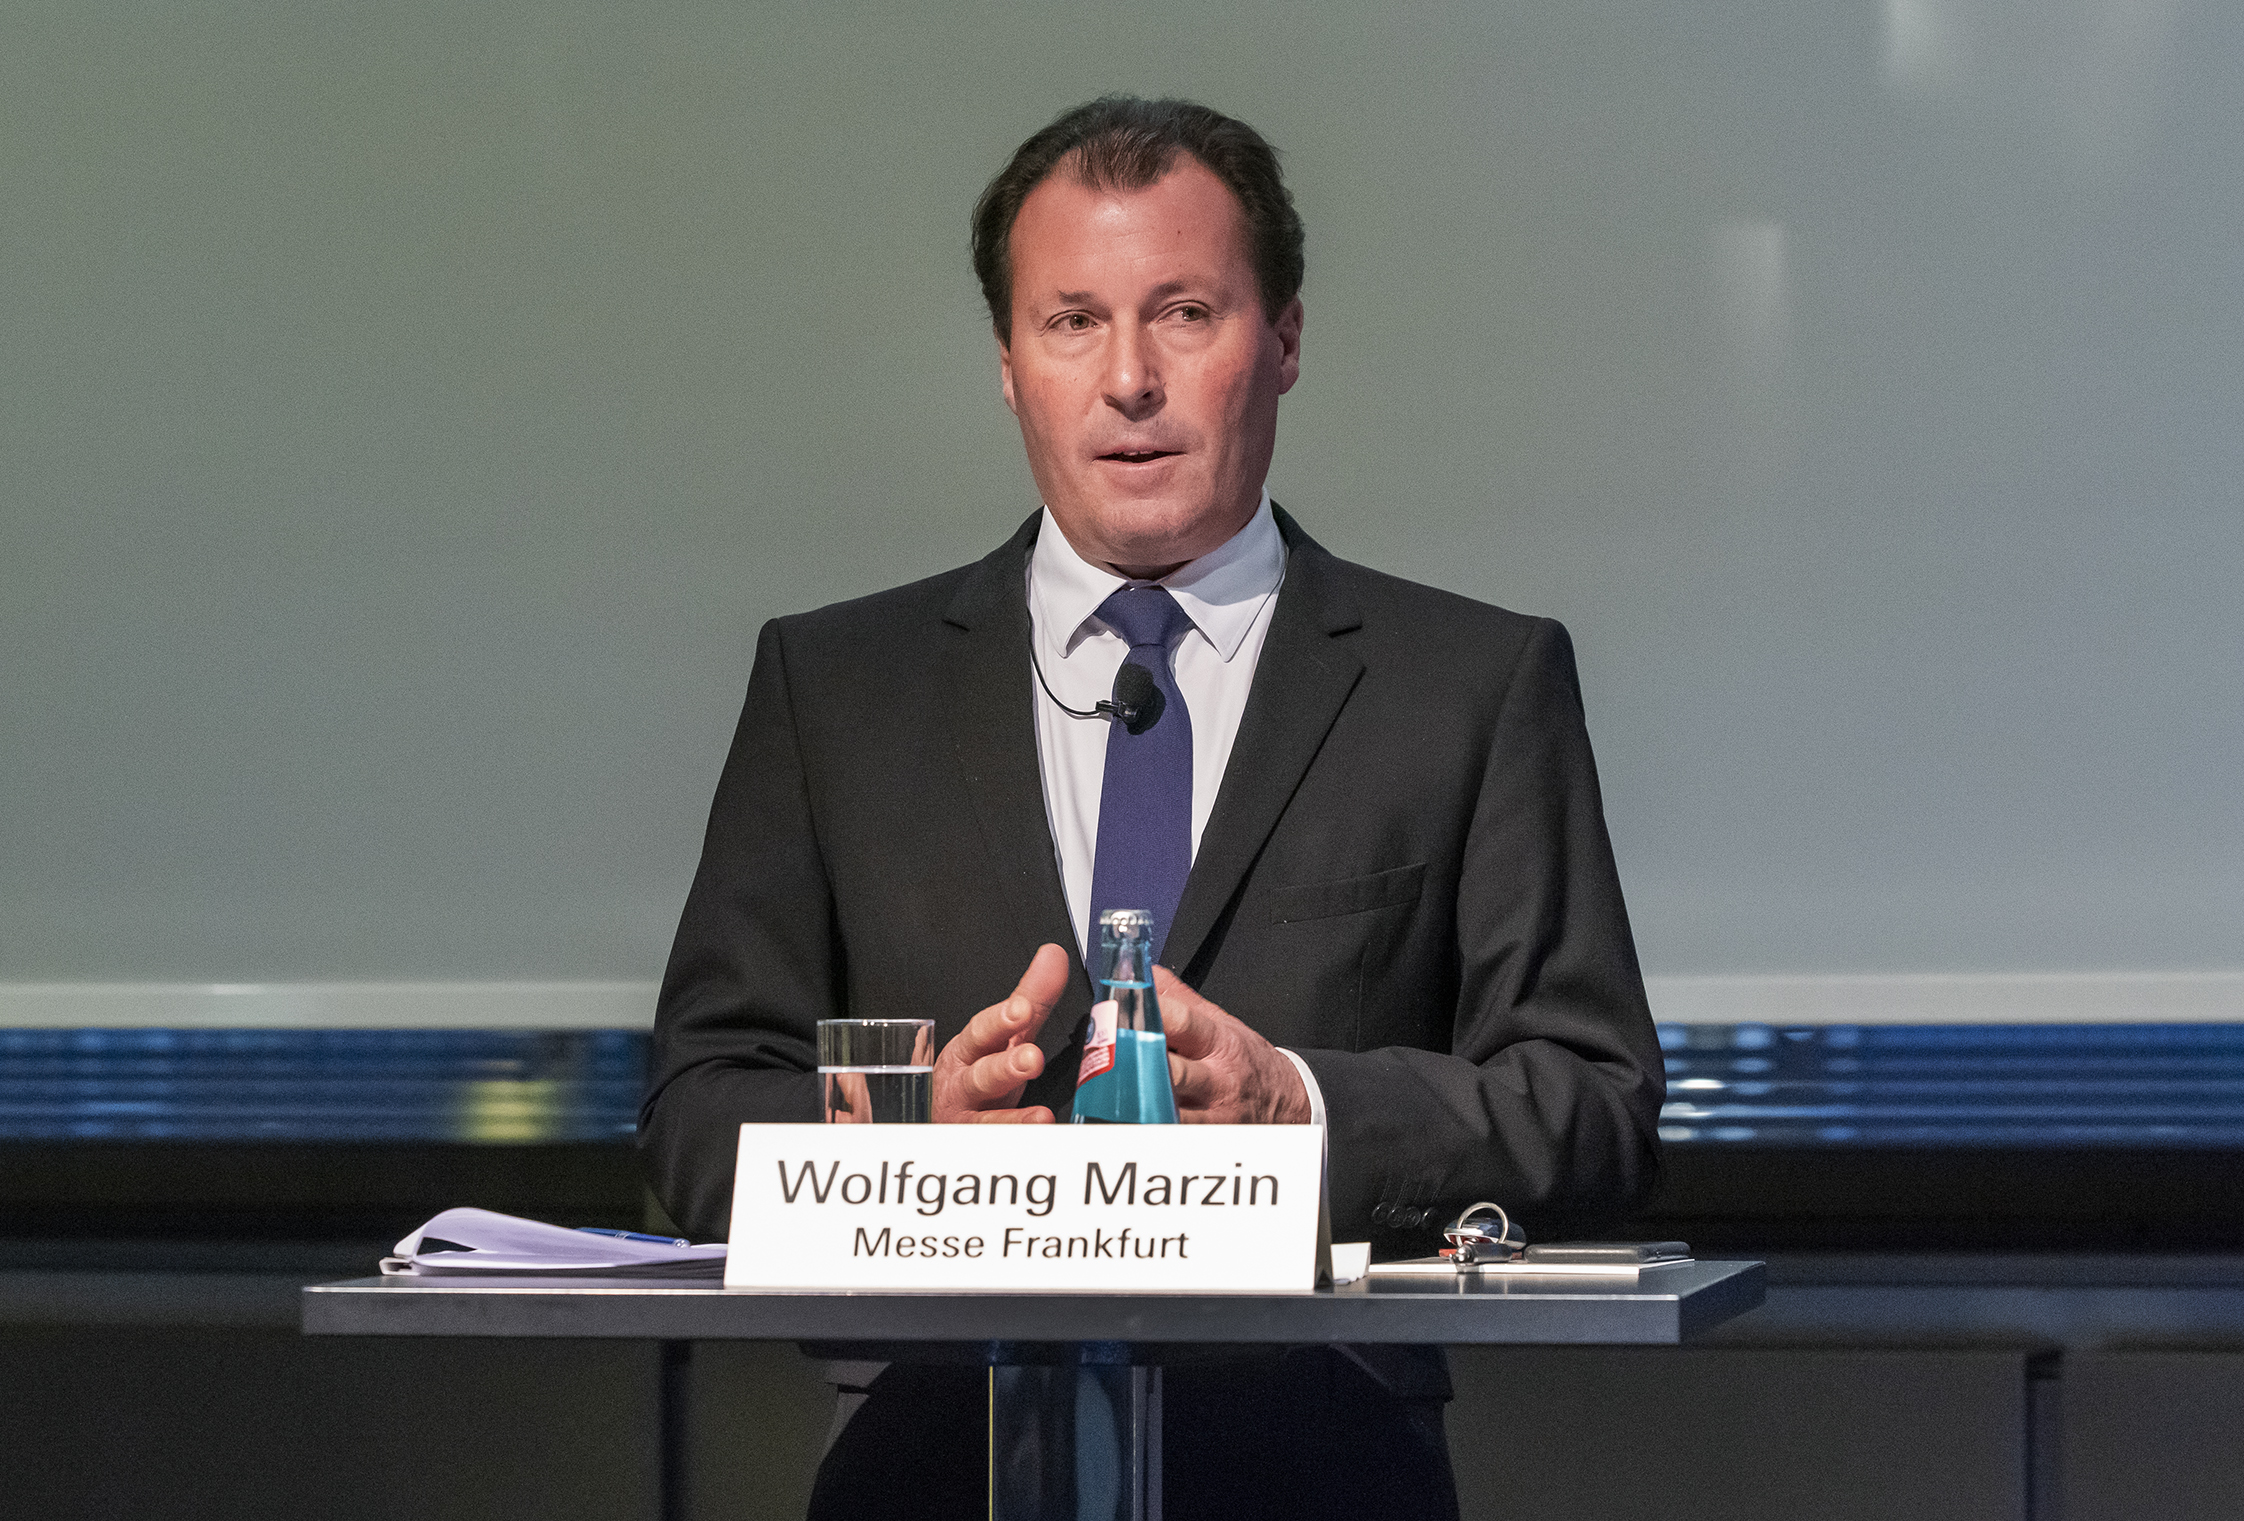 Wolfgang Marzin, Vorsitzender der Geschäftsführung Messe Frankfurt